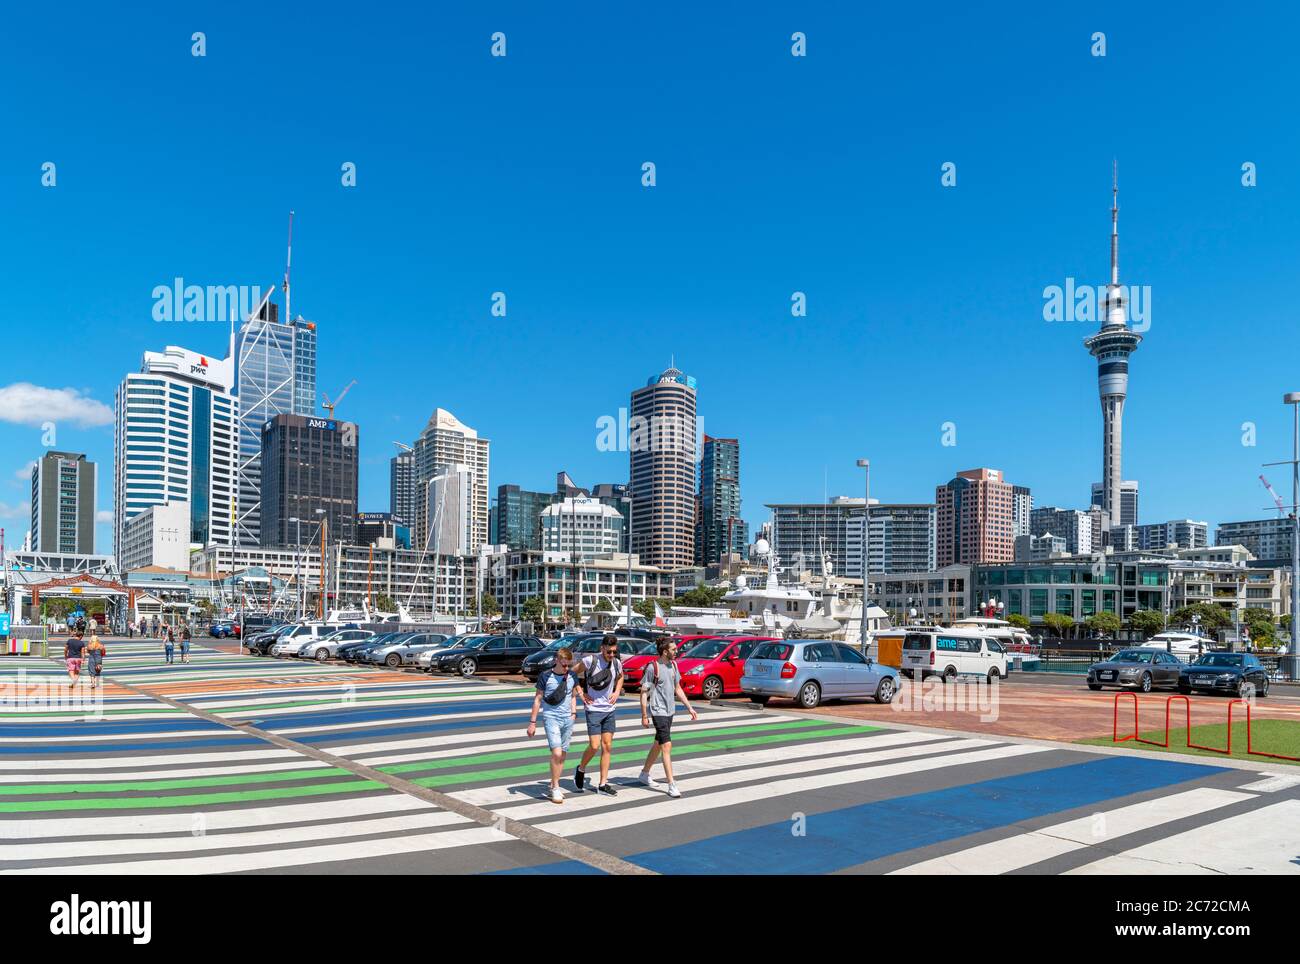 Horizonte del distrito central de negocios desde el barrio Wynard, Viaduct Harbor, Auckland, Nueva Zelanda Foto de stock